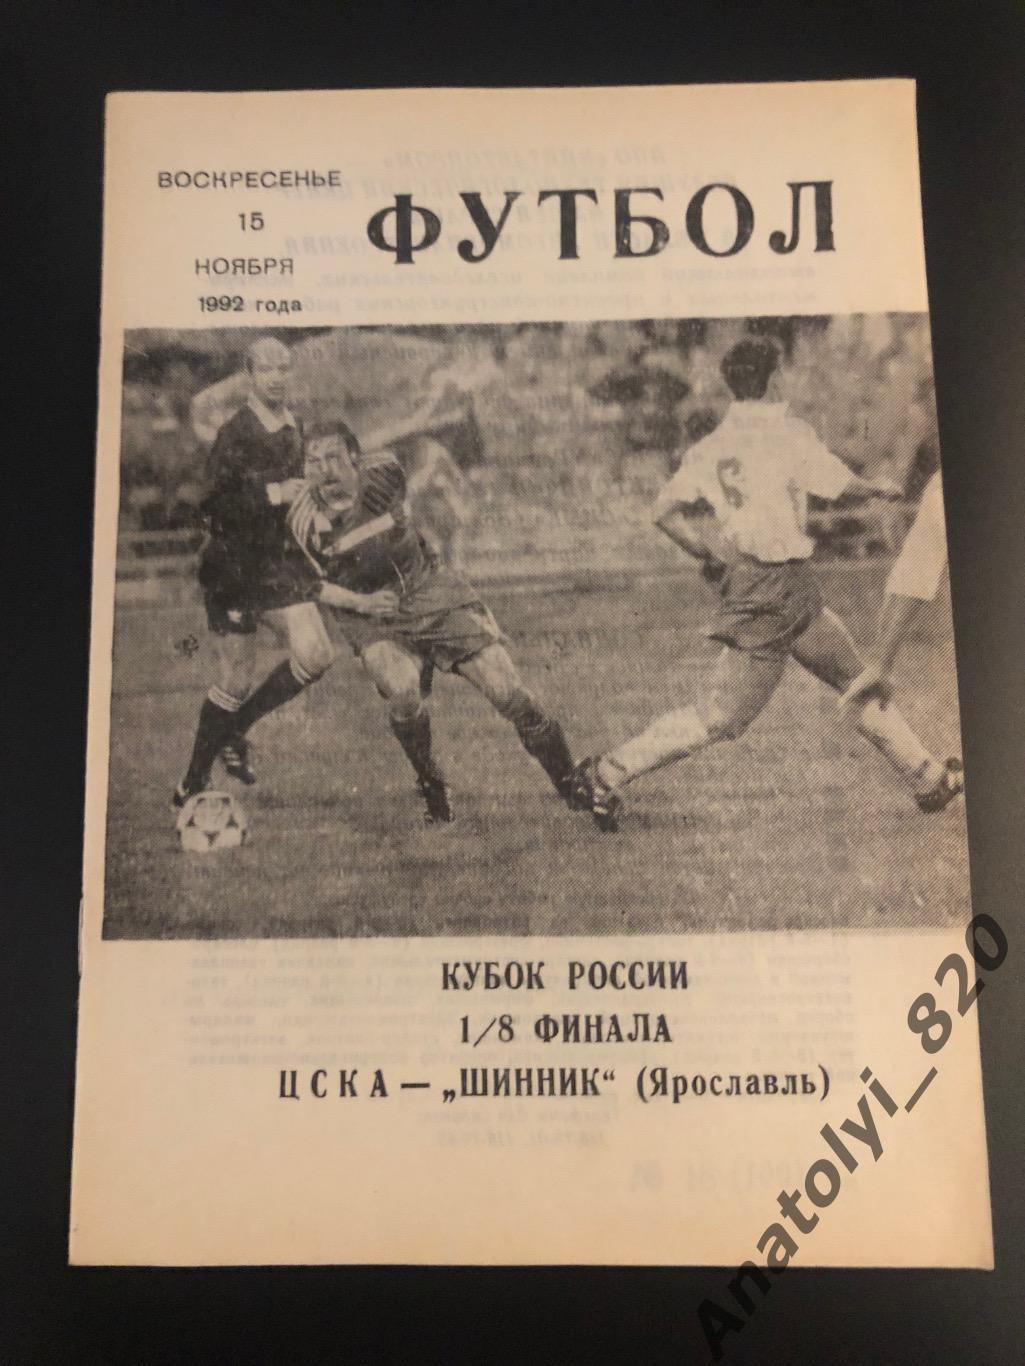 ЦСКА Москва - Шинник Ярославль, 15.11.1992